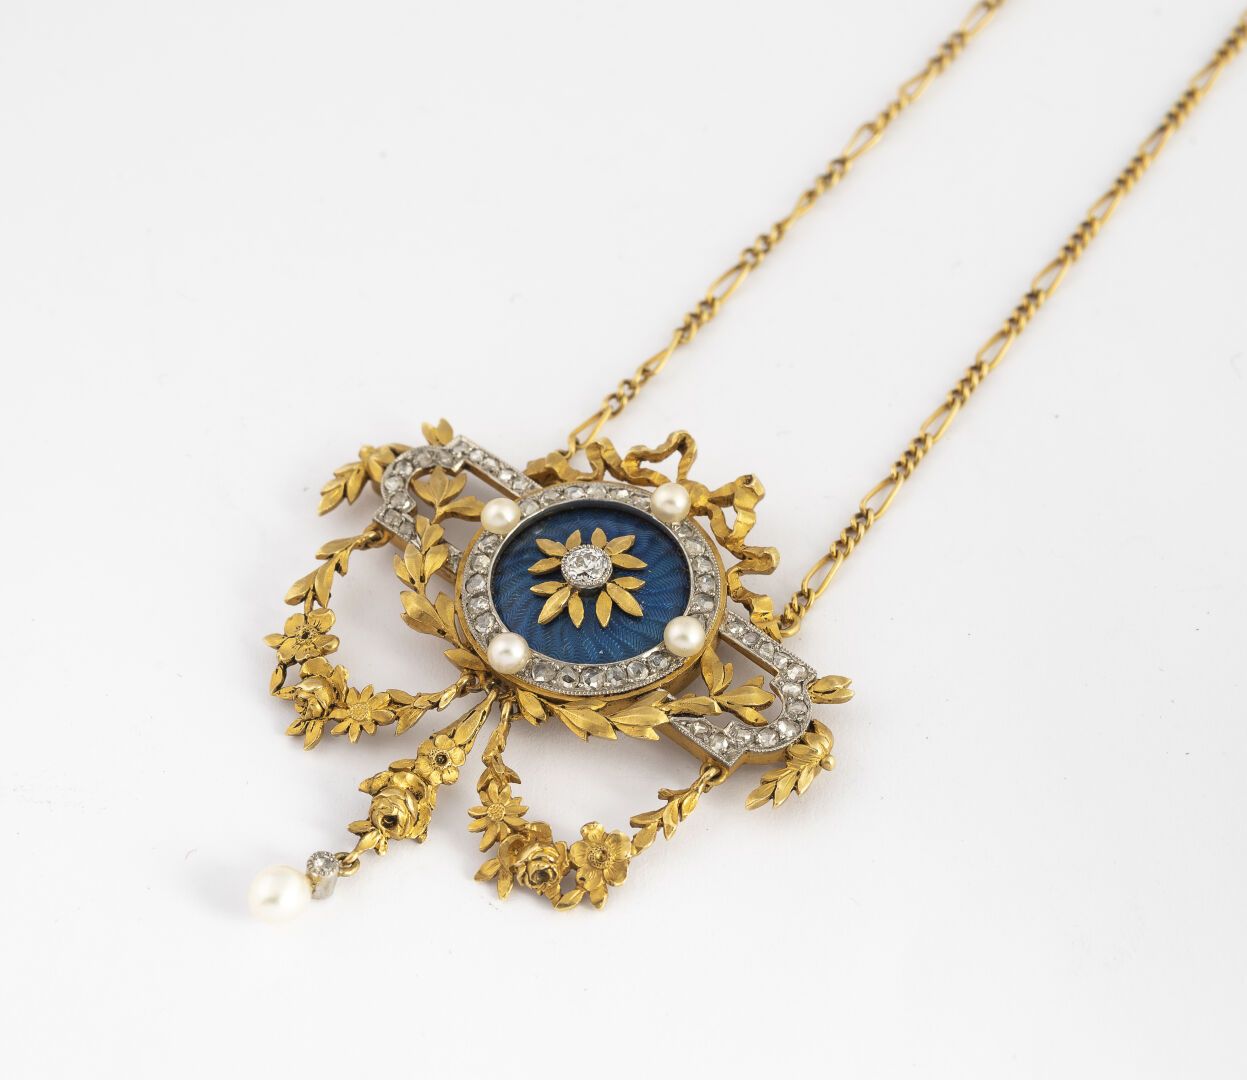 Null 帷幔项链

在750°/°金中

在玫瑰和珍珠种子框架内的蓝色扭索状珐琅盘上，以一个结的图案为中心，镶嵌着一颗TA的钻石，流苏上的花环使其更加突出。
&hellip;